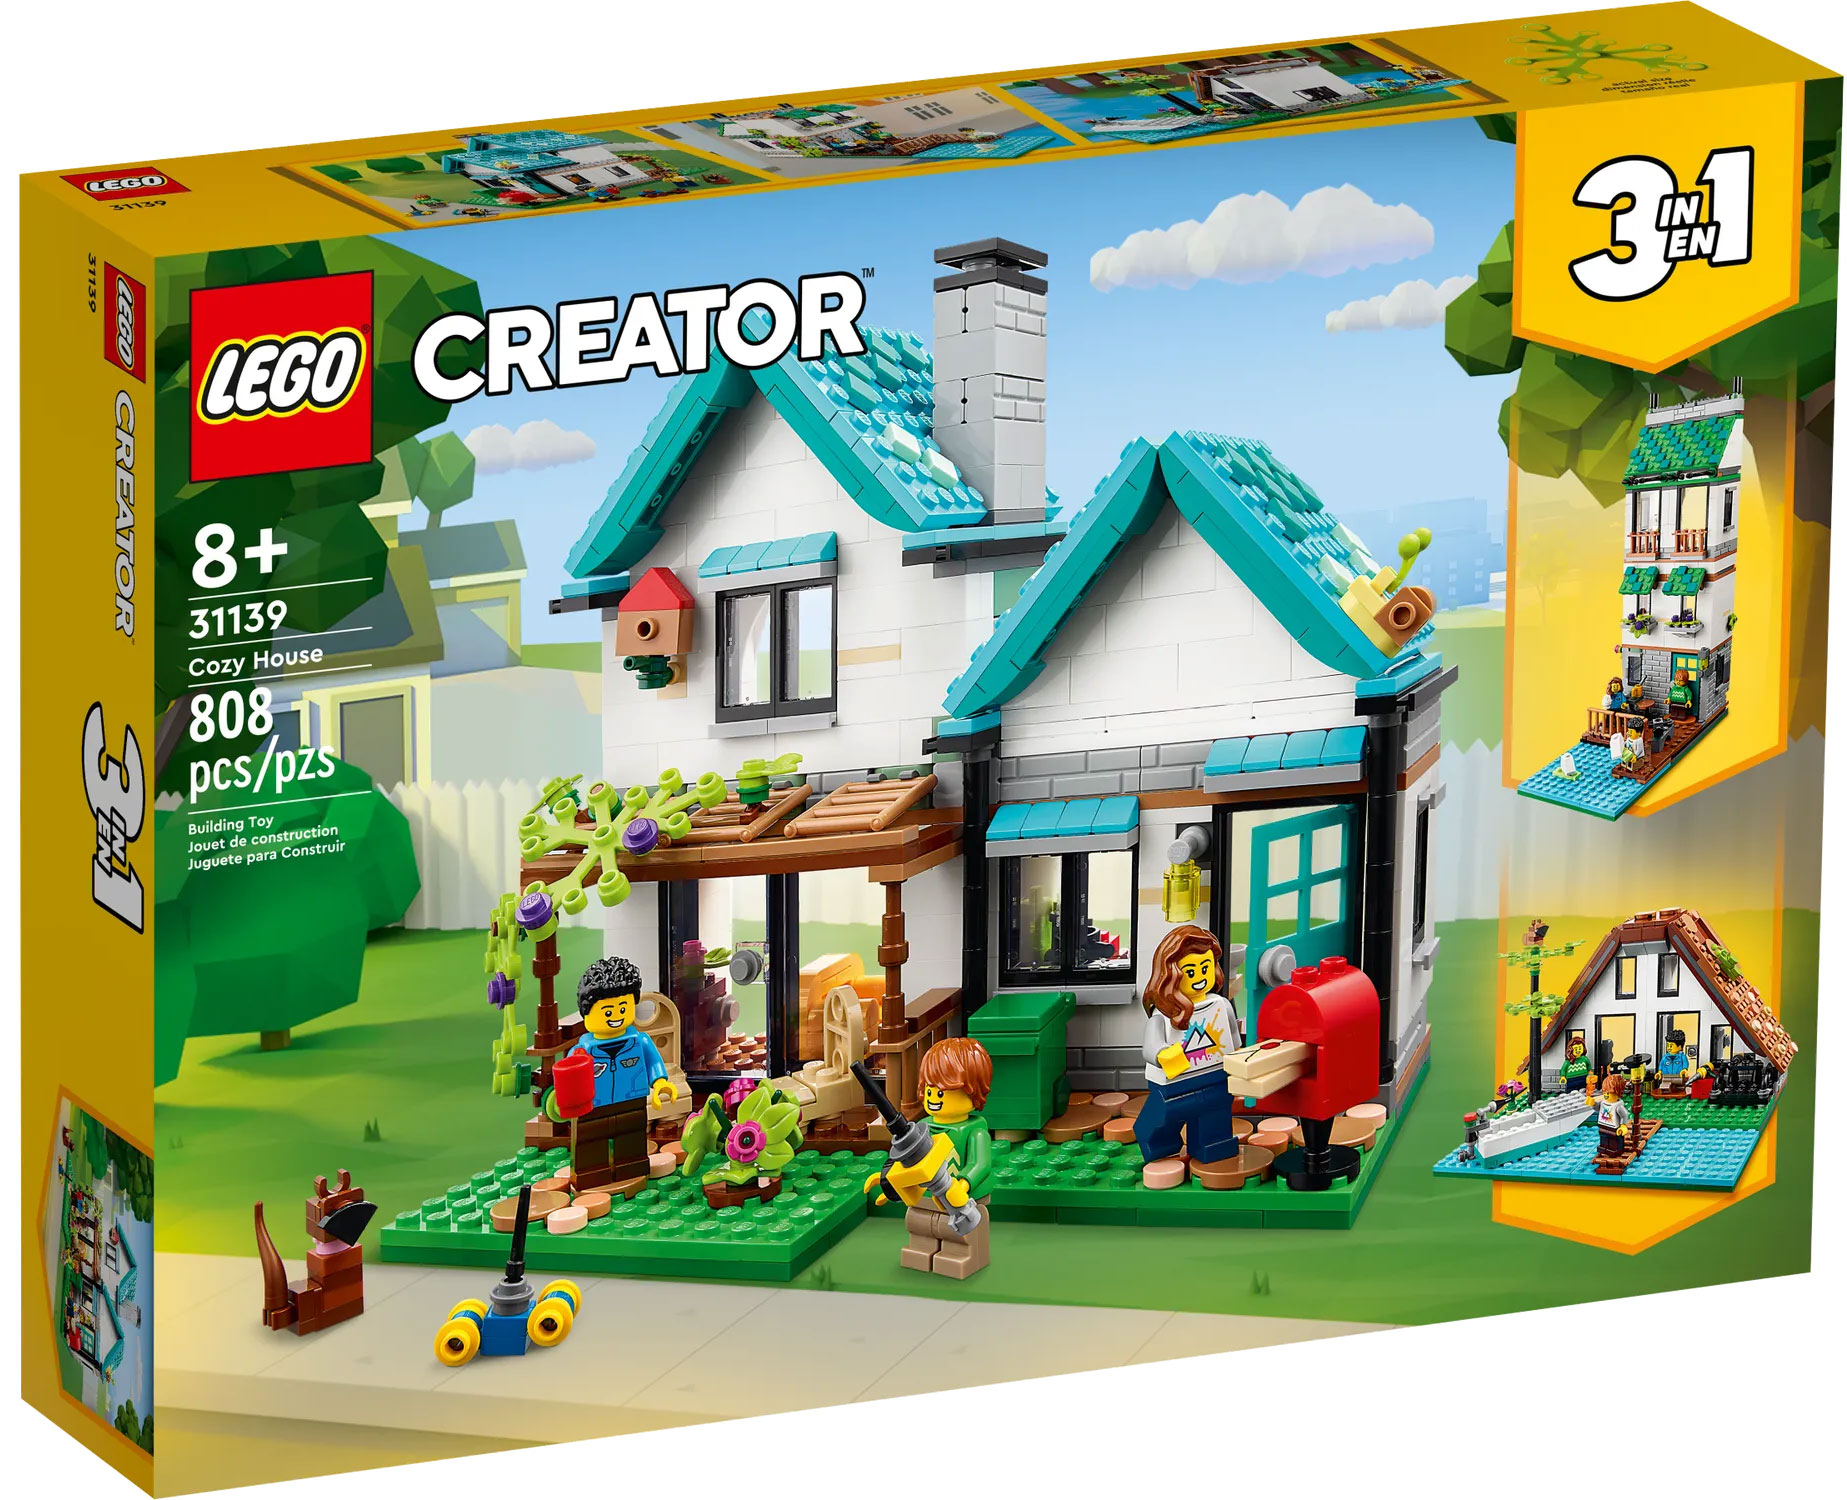 LEGO Creator 31139 pas cher, La maison accueillante